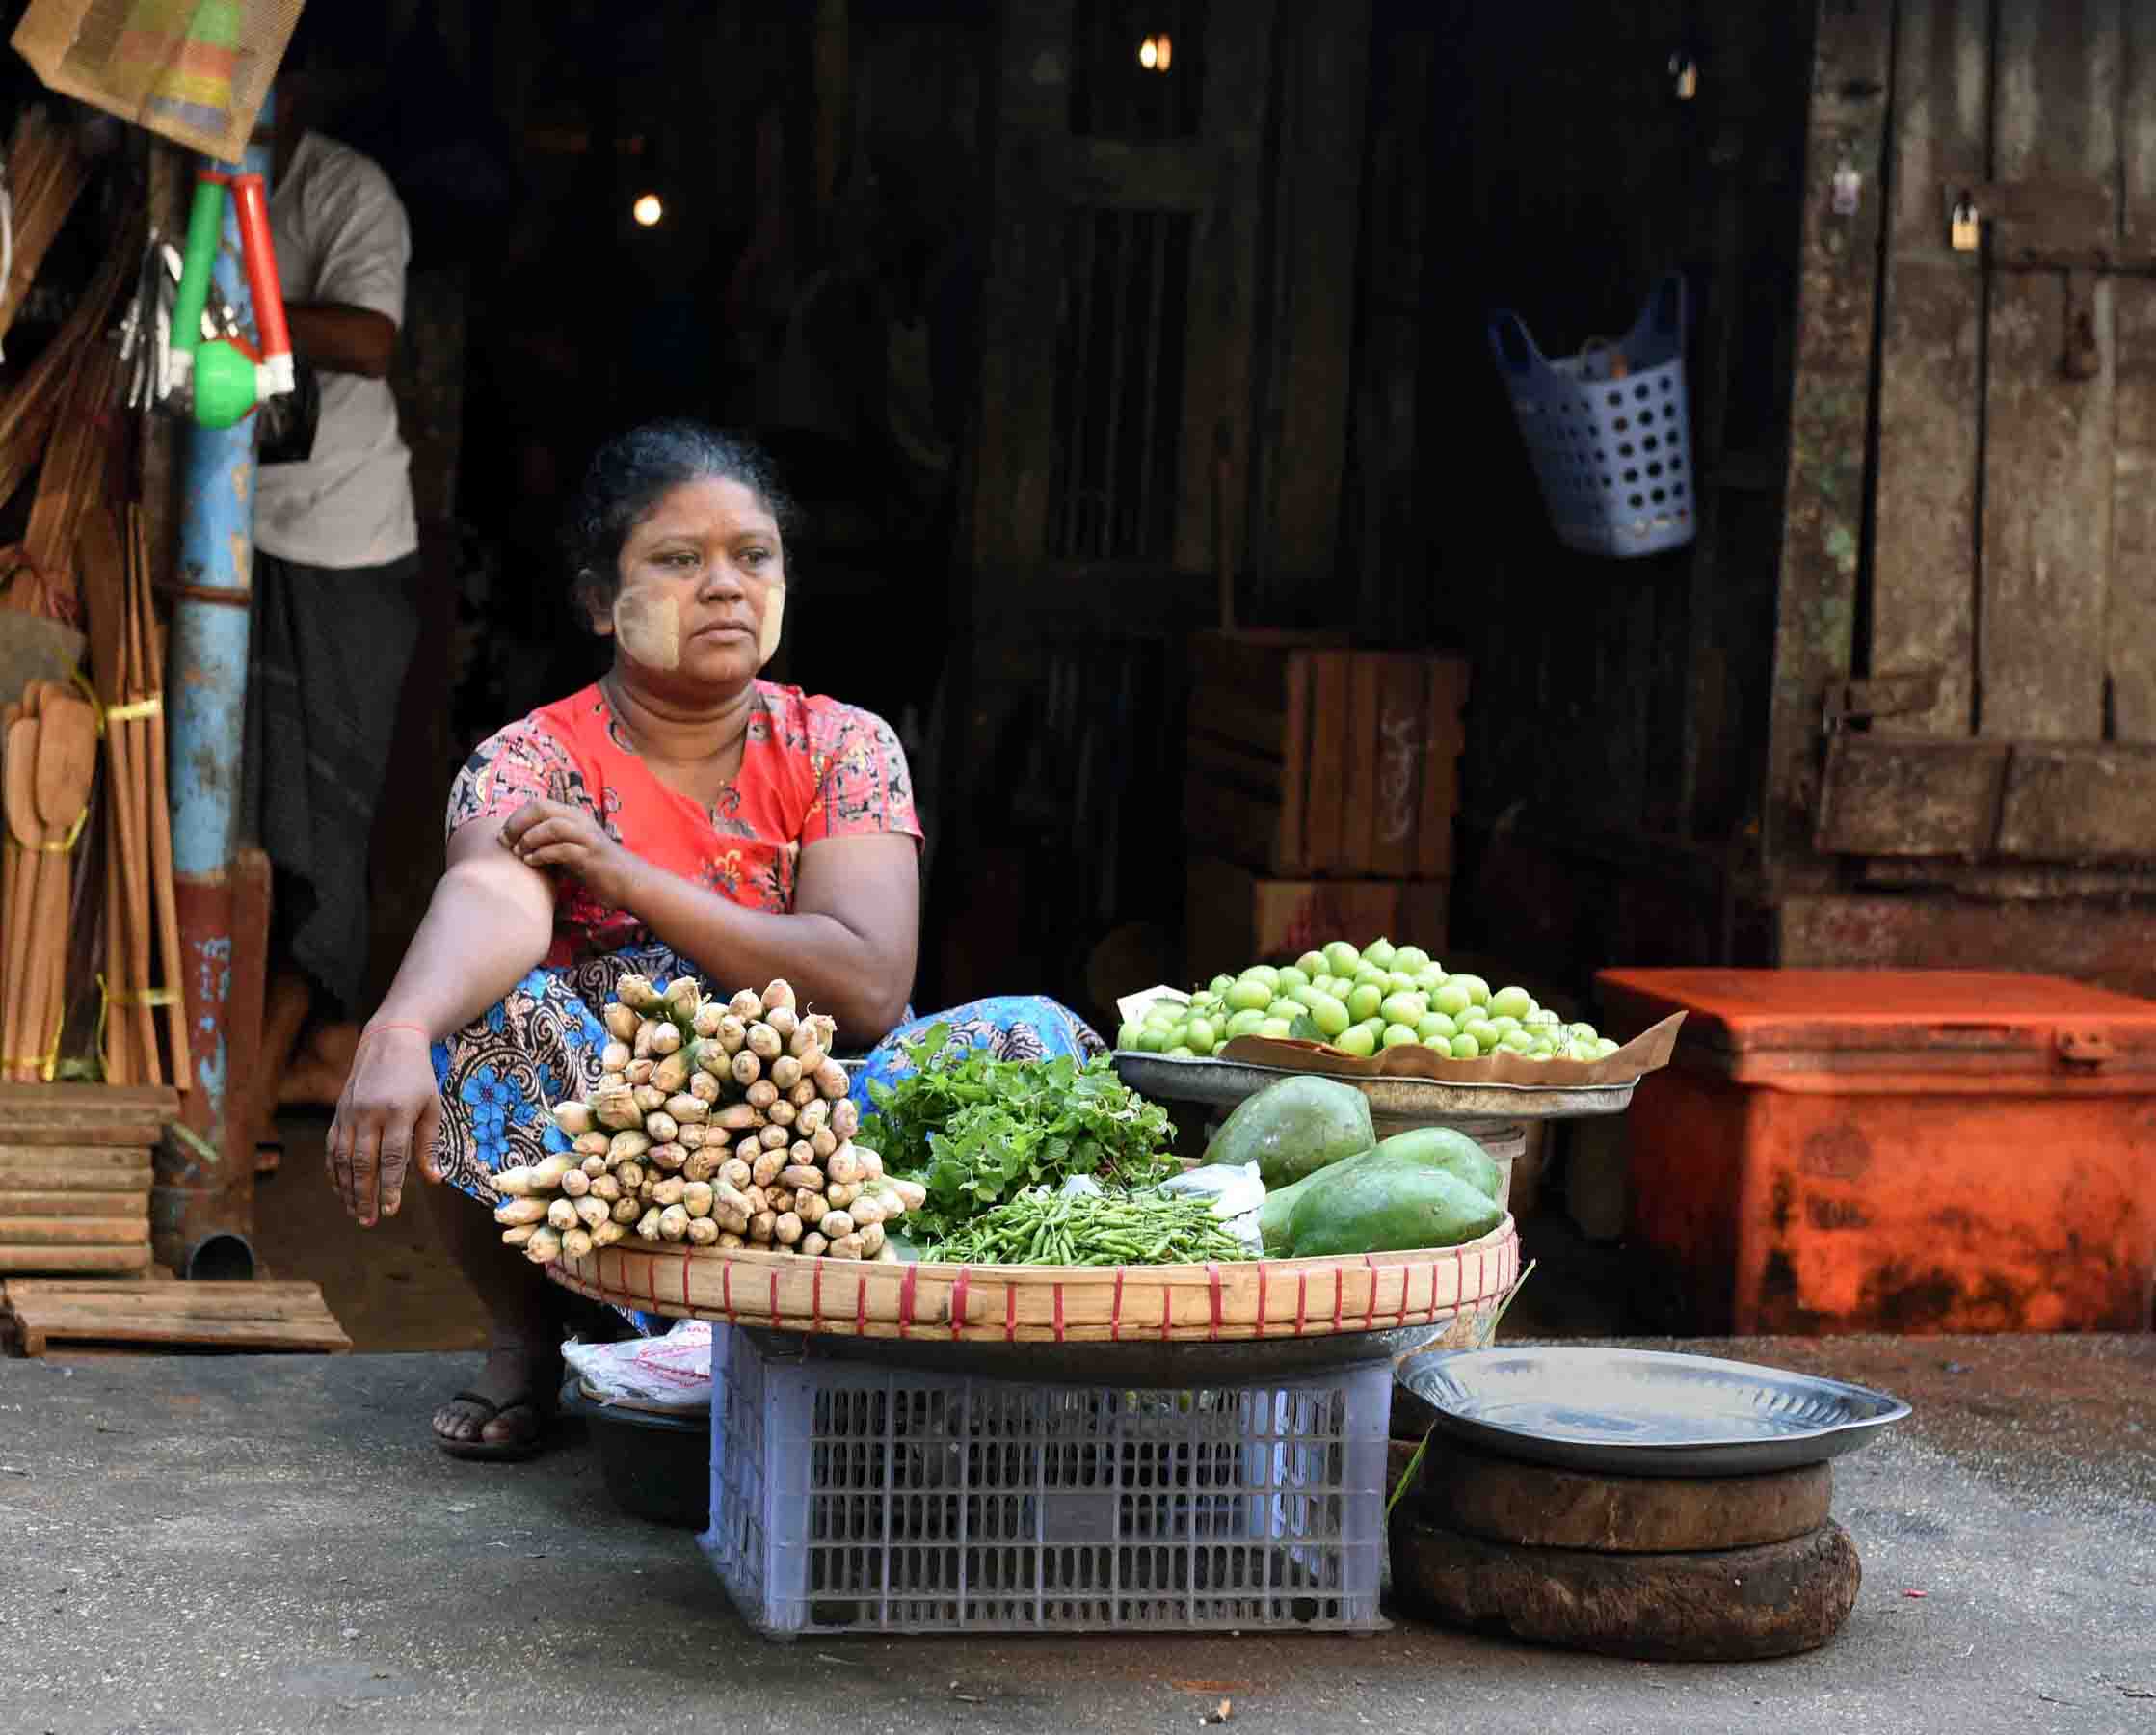 A market vendor selling vegetables. (Photo: Naomi Hellmann)